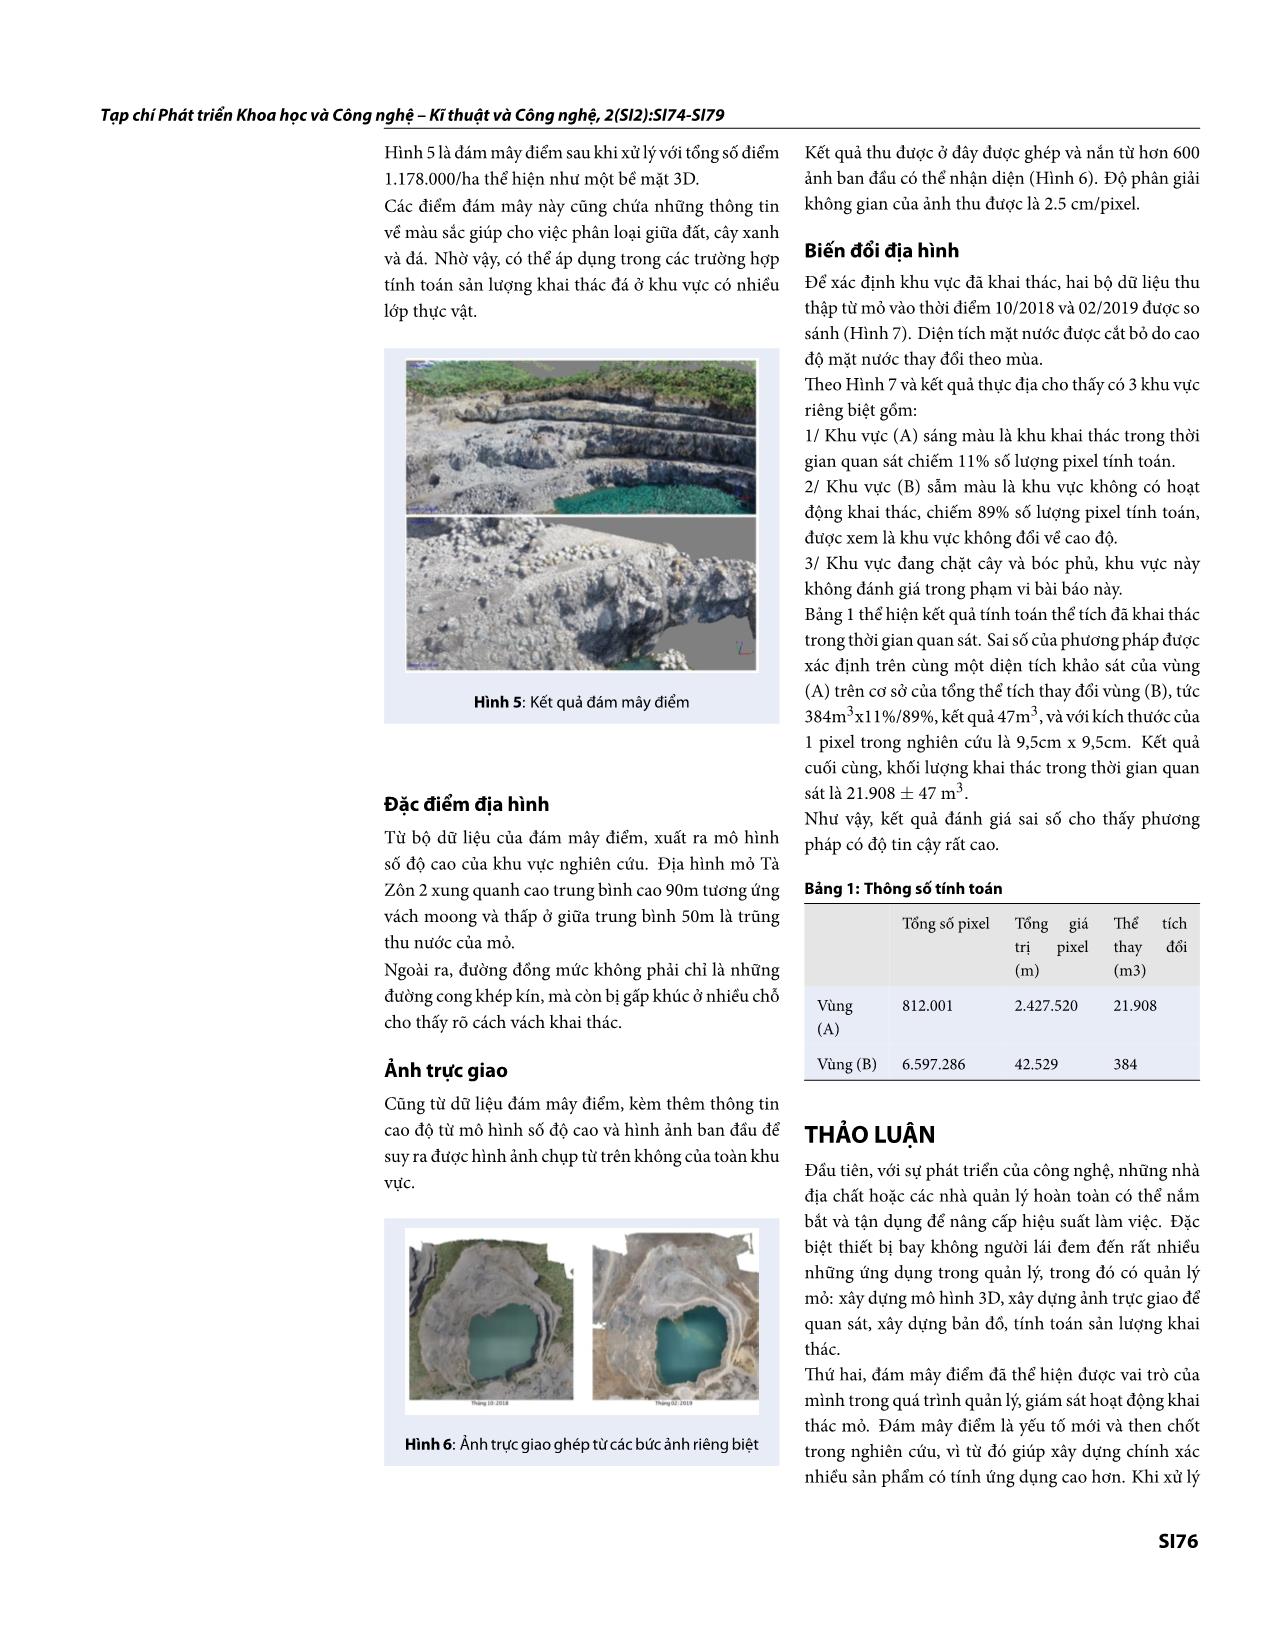 Quản lý hoạt động khai thác đá bằng thiết bị bay không người lái ở mỏ đá Tà Zôn 2 trang 3